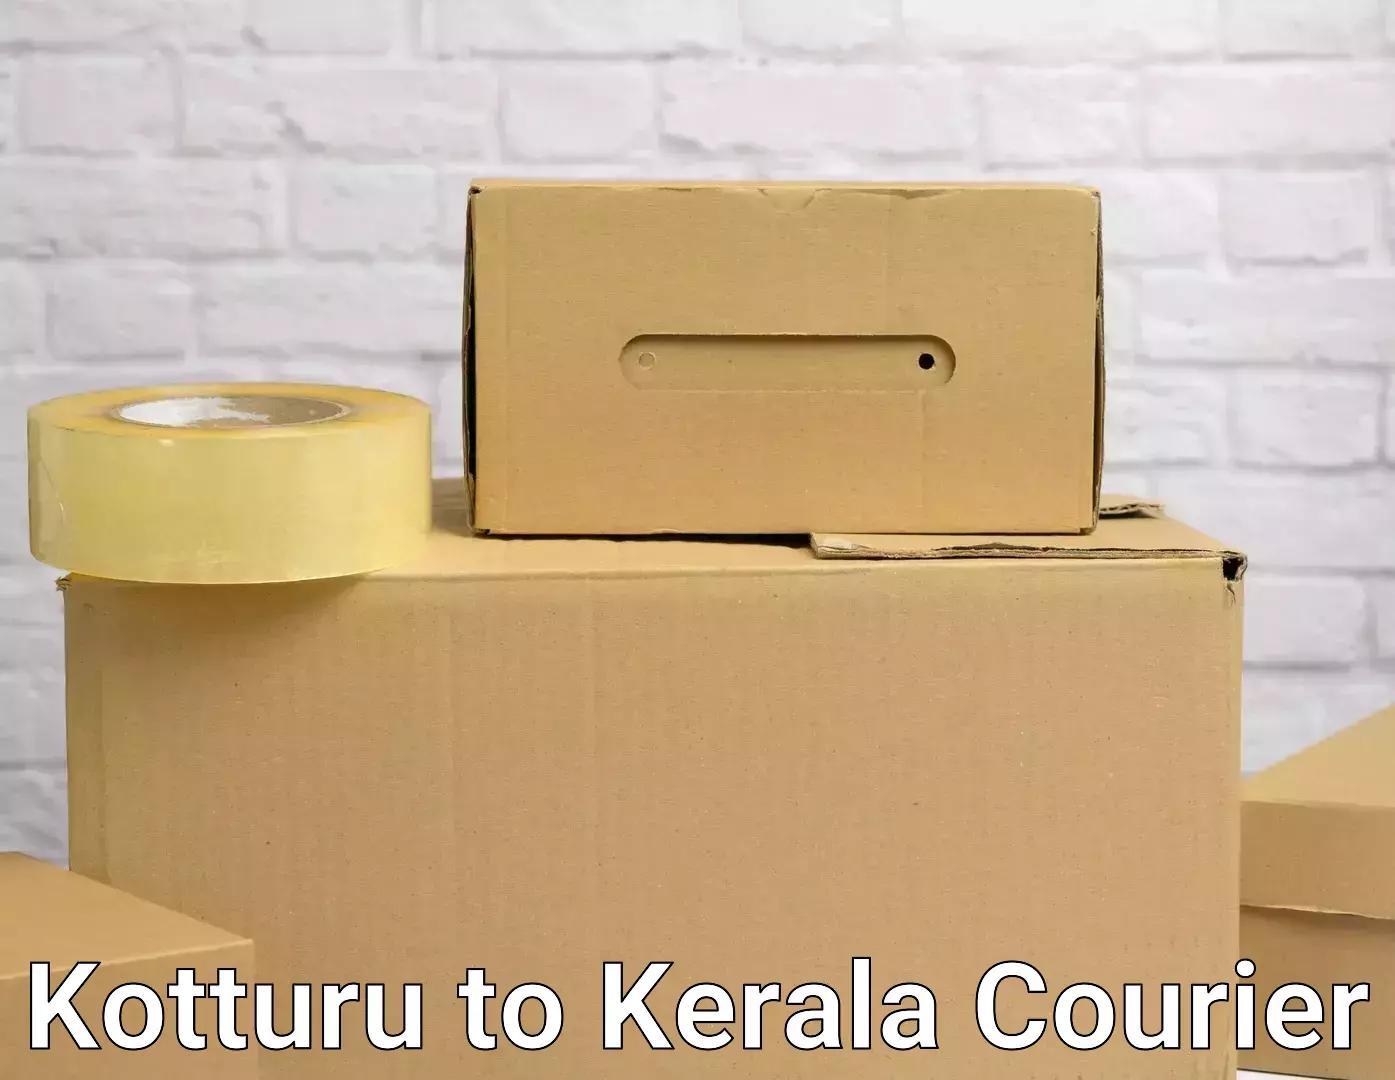 Efficient home movers in Kotturu to Kerala